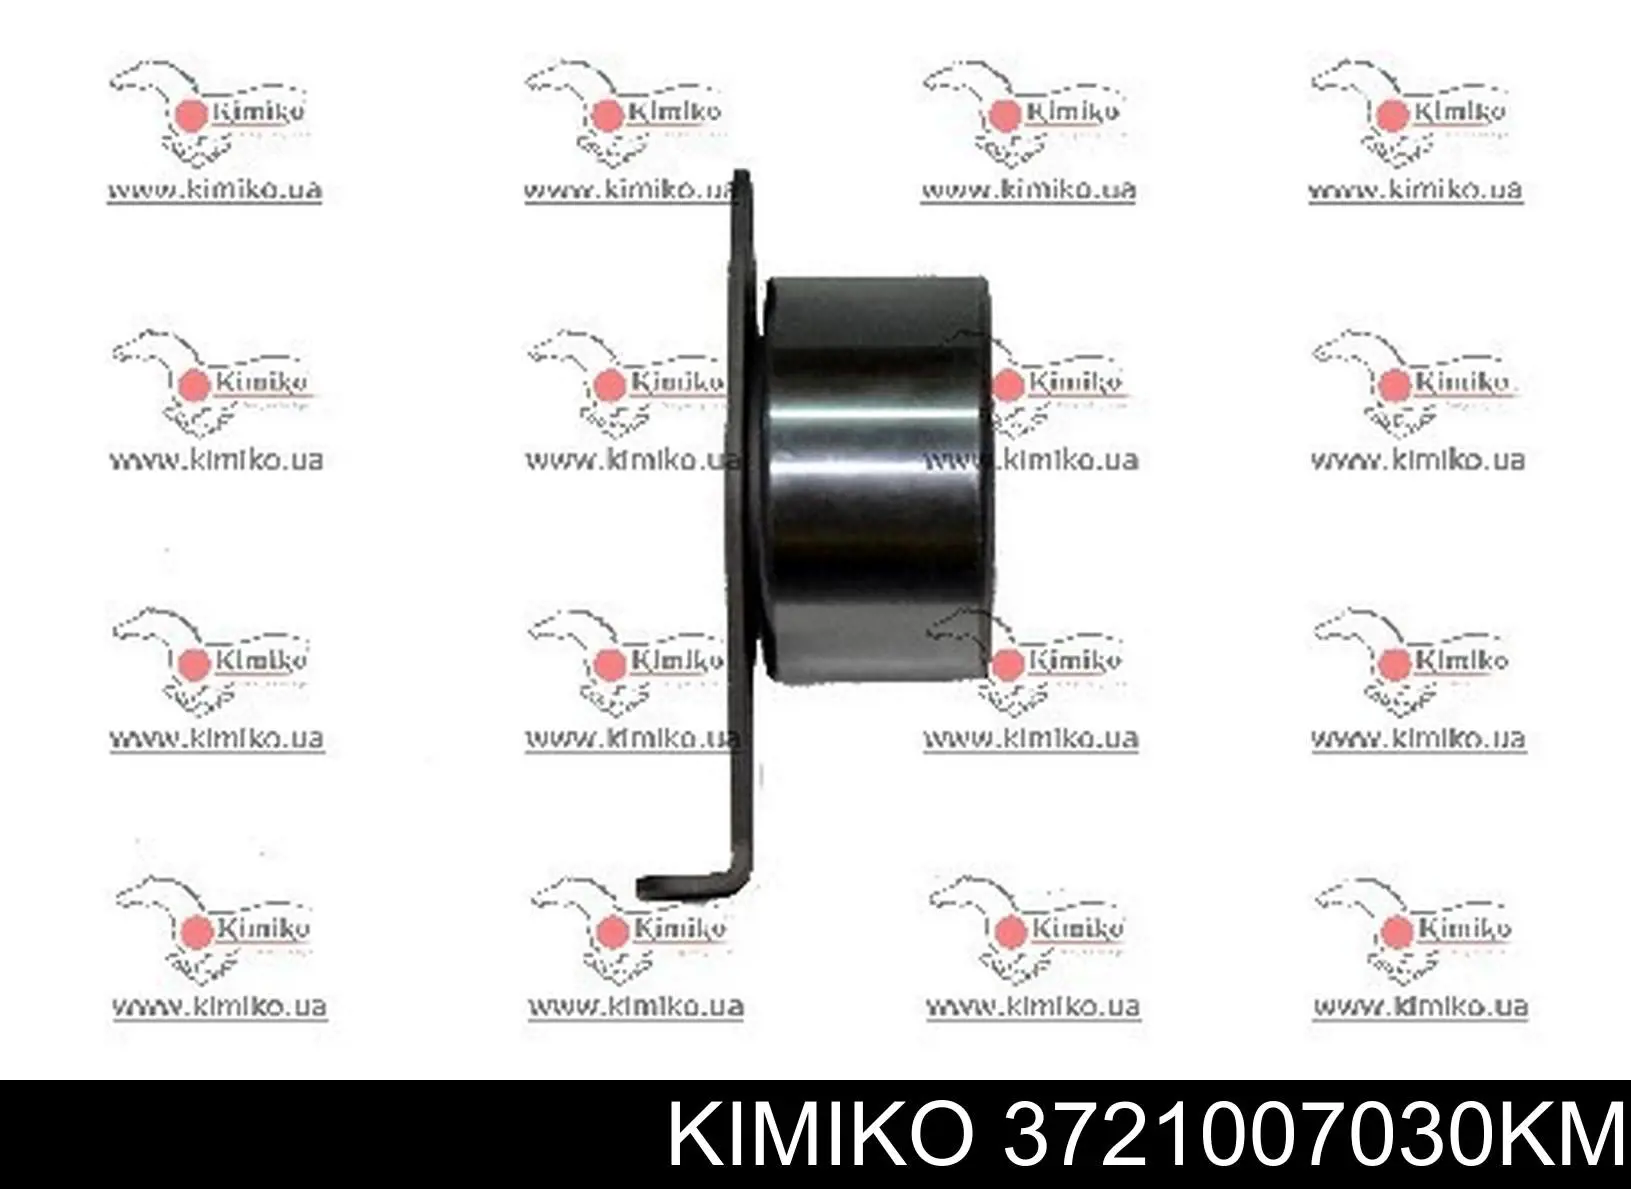 372-1007030-KM Kimiko rodillo, cadena de distribución